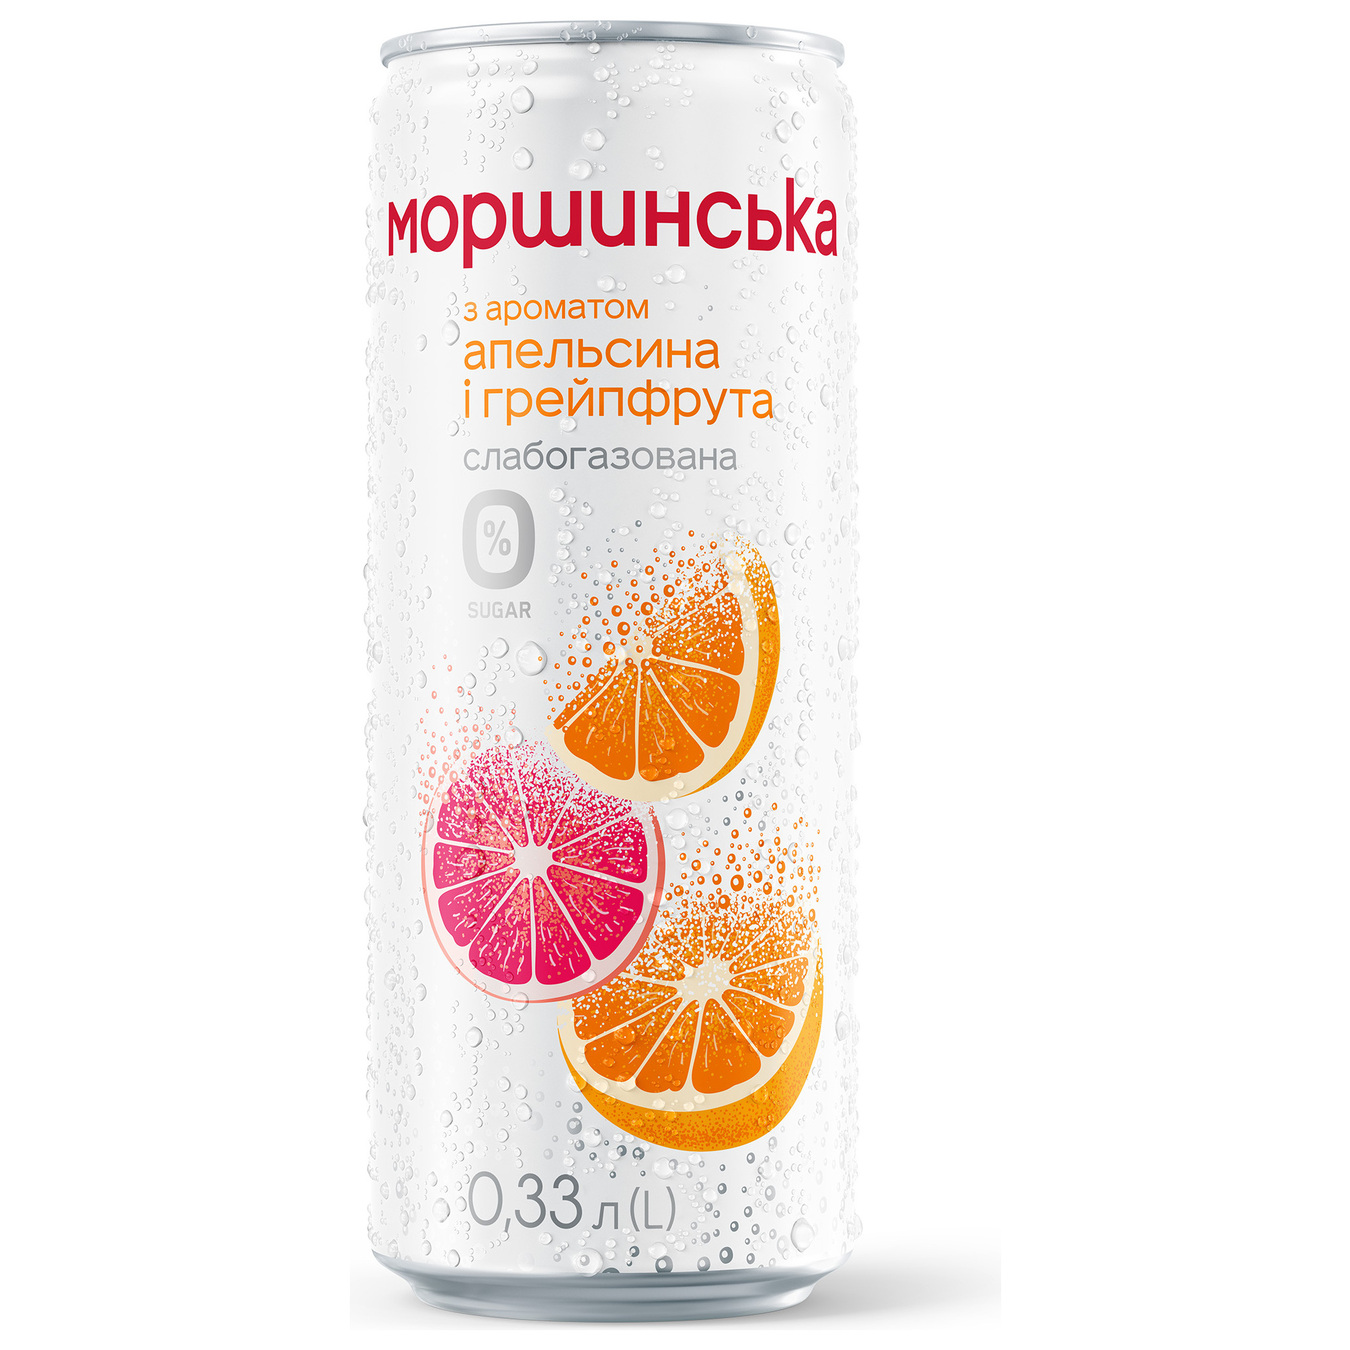 Вода Моршинская апельсин-грейпфрут слабогазированная 0,33л